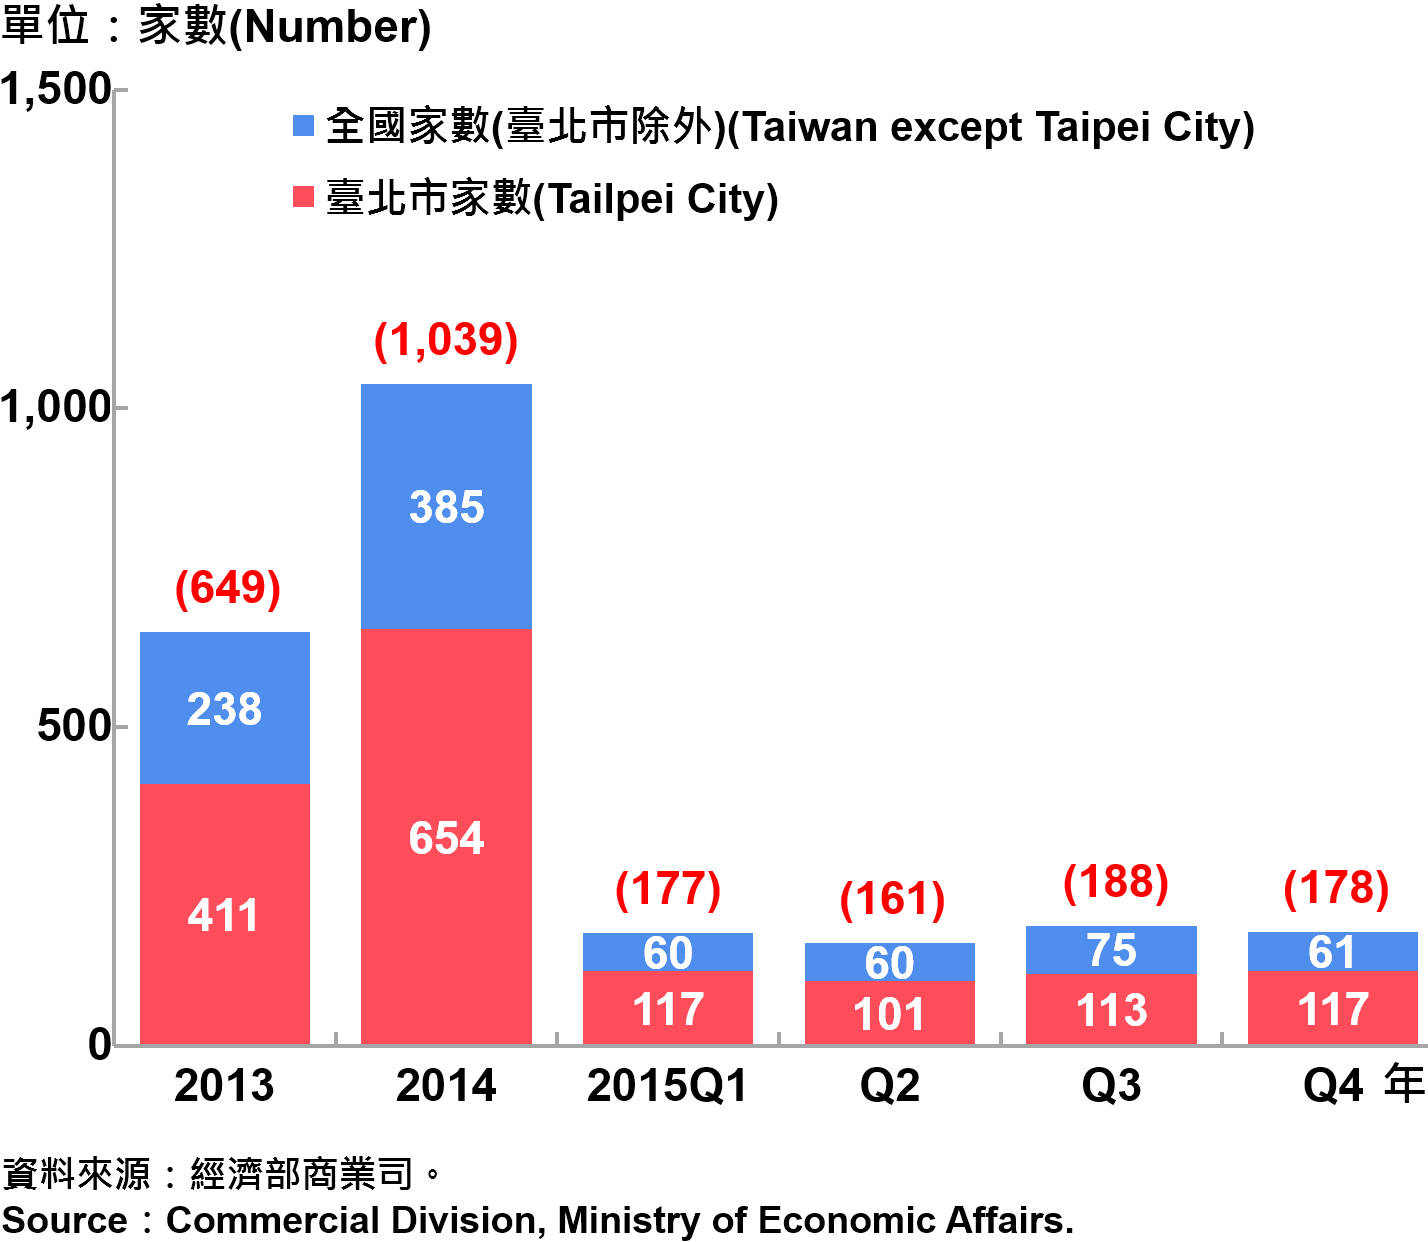 圖14 臺北市外商公司新設立家數趨勢圖 Number of Newly Established Foreign Companies in Taipei